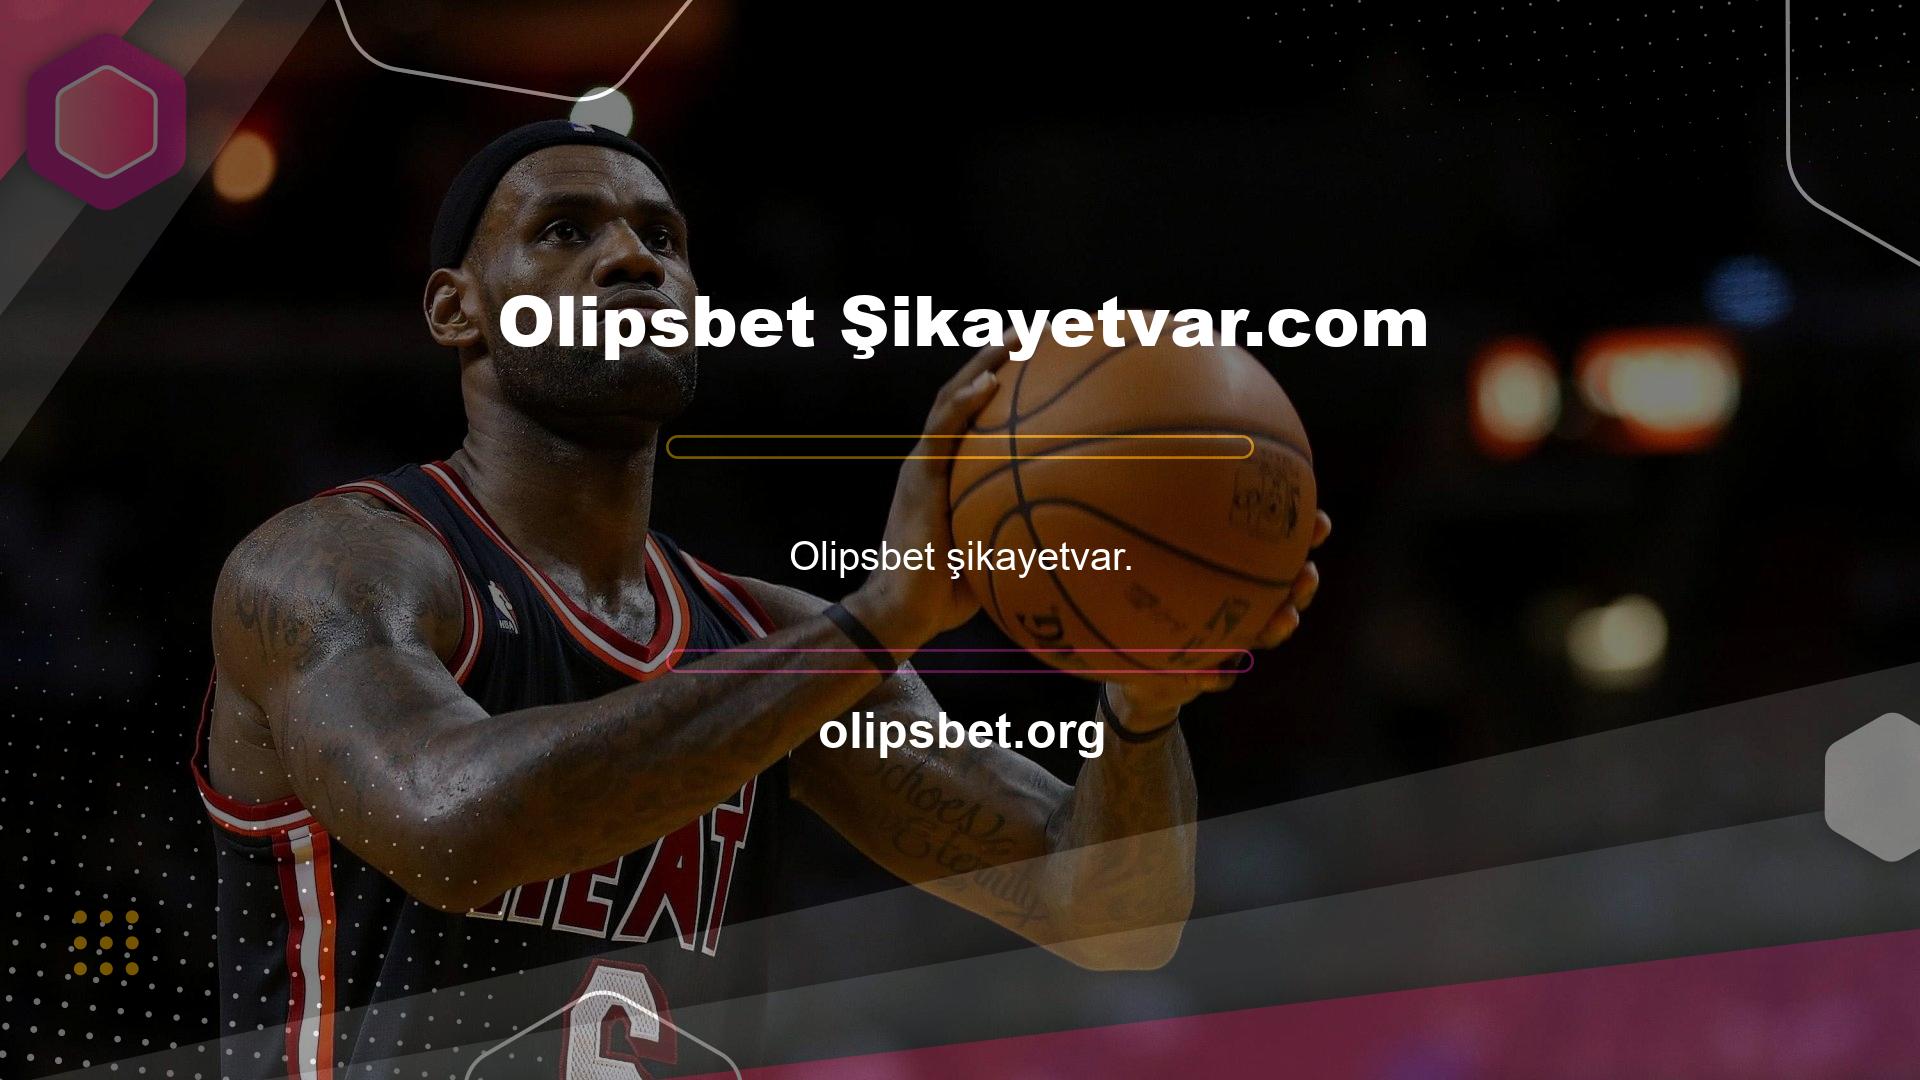 Olipsbet Şikayetvar.com